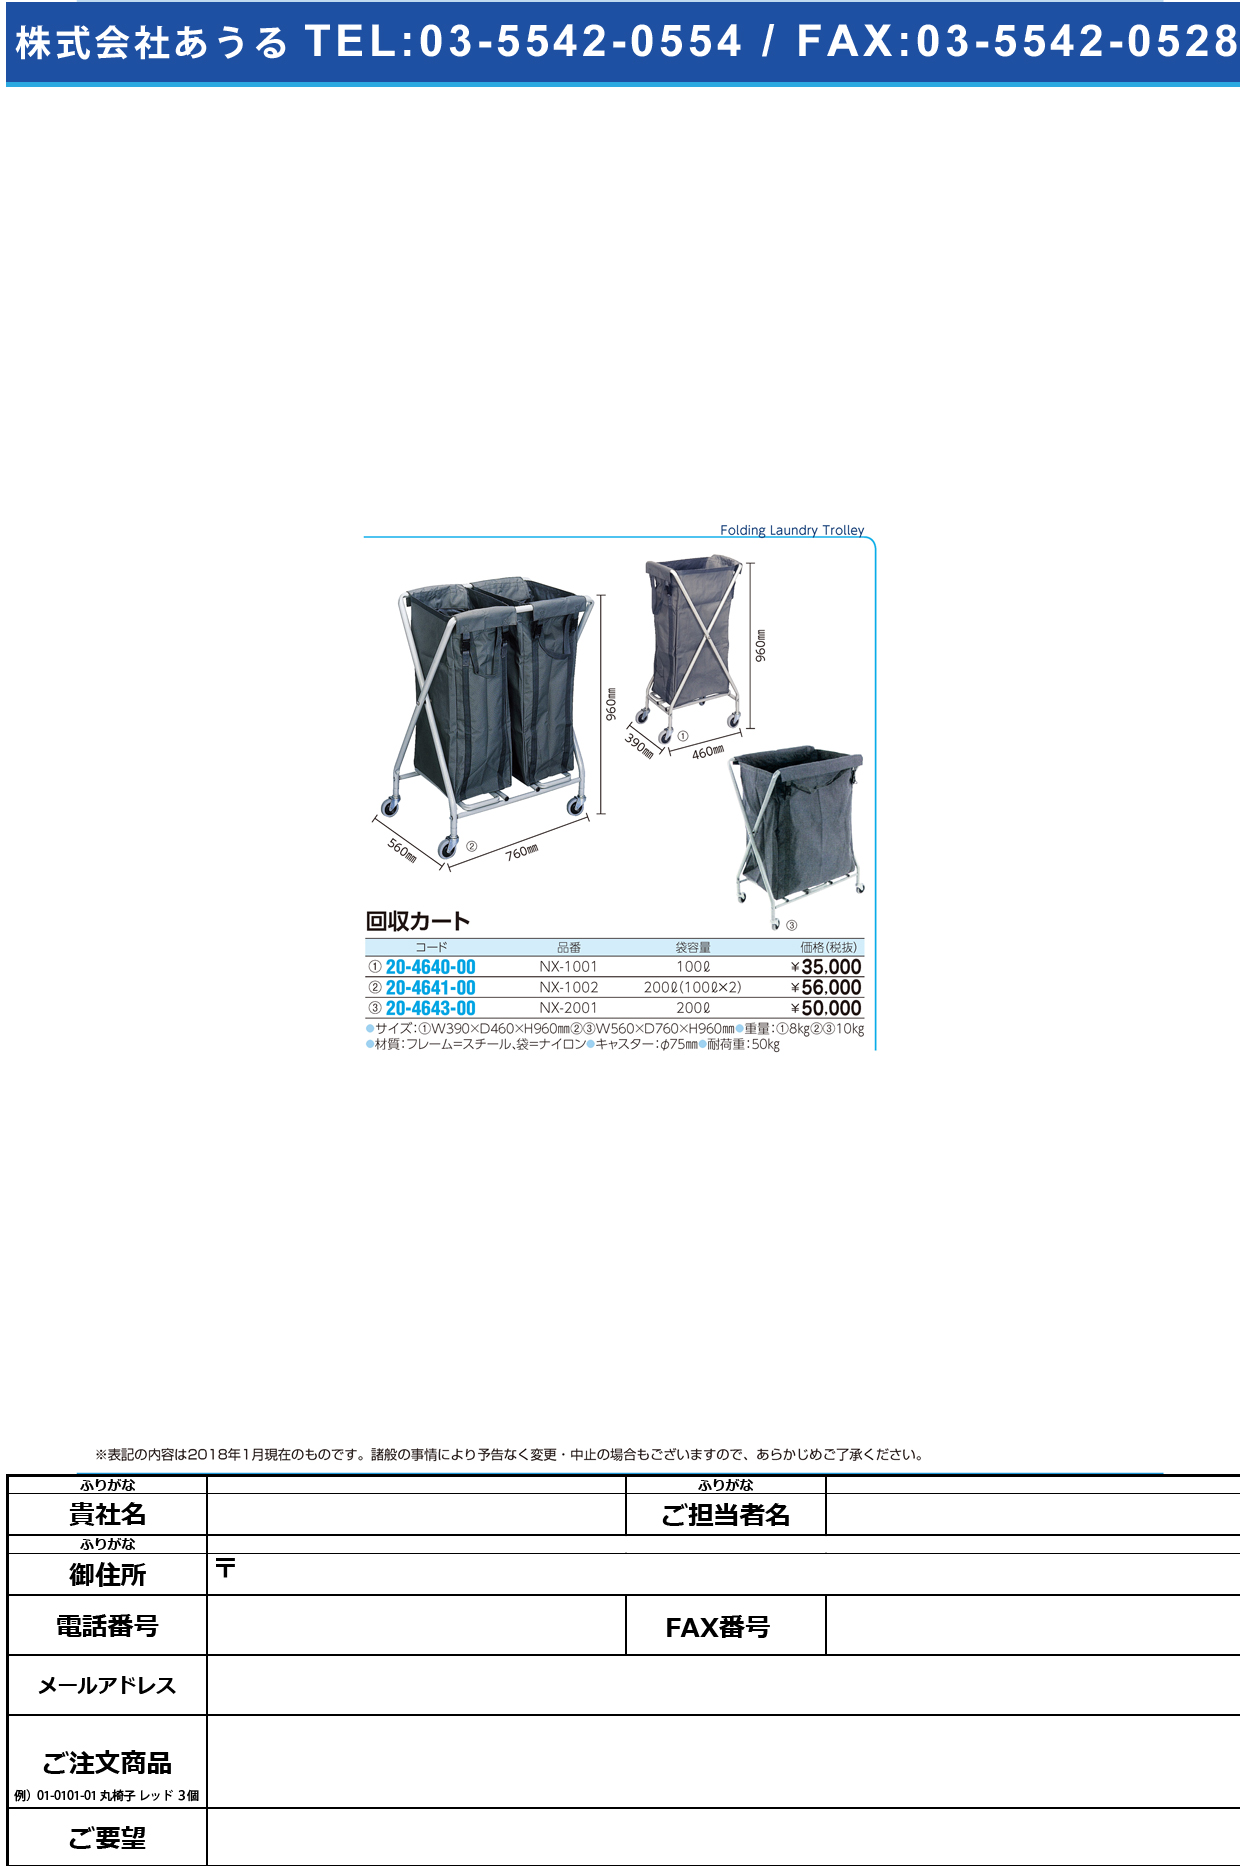 (20-4643-00)回収・リネンカート NX-2001 ｶｲｼｭｳｶｰﾄ(金沢車輛)【1台単位】【2018年カタログ商品】